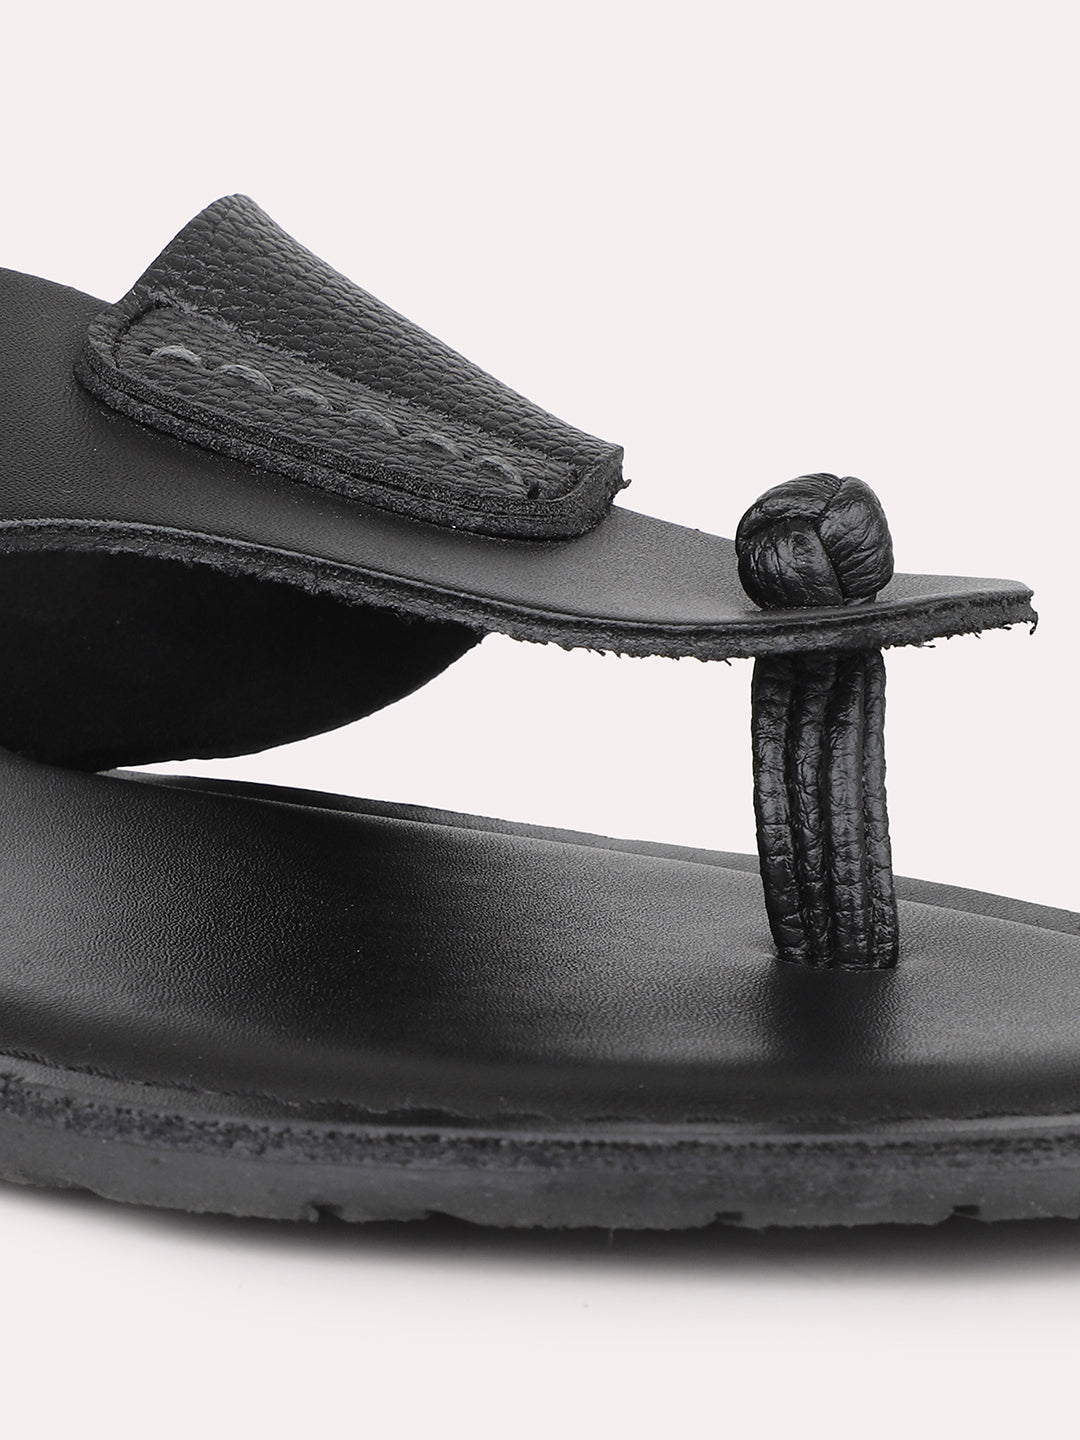 Privo Black T-starp Casual Sandal For Men